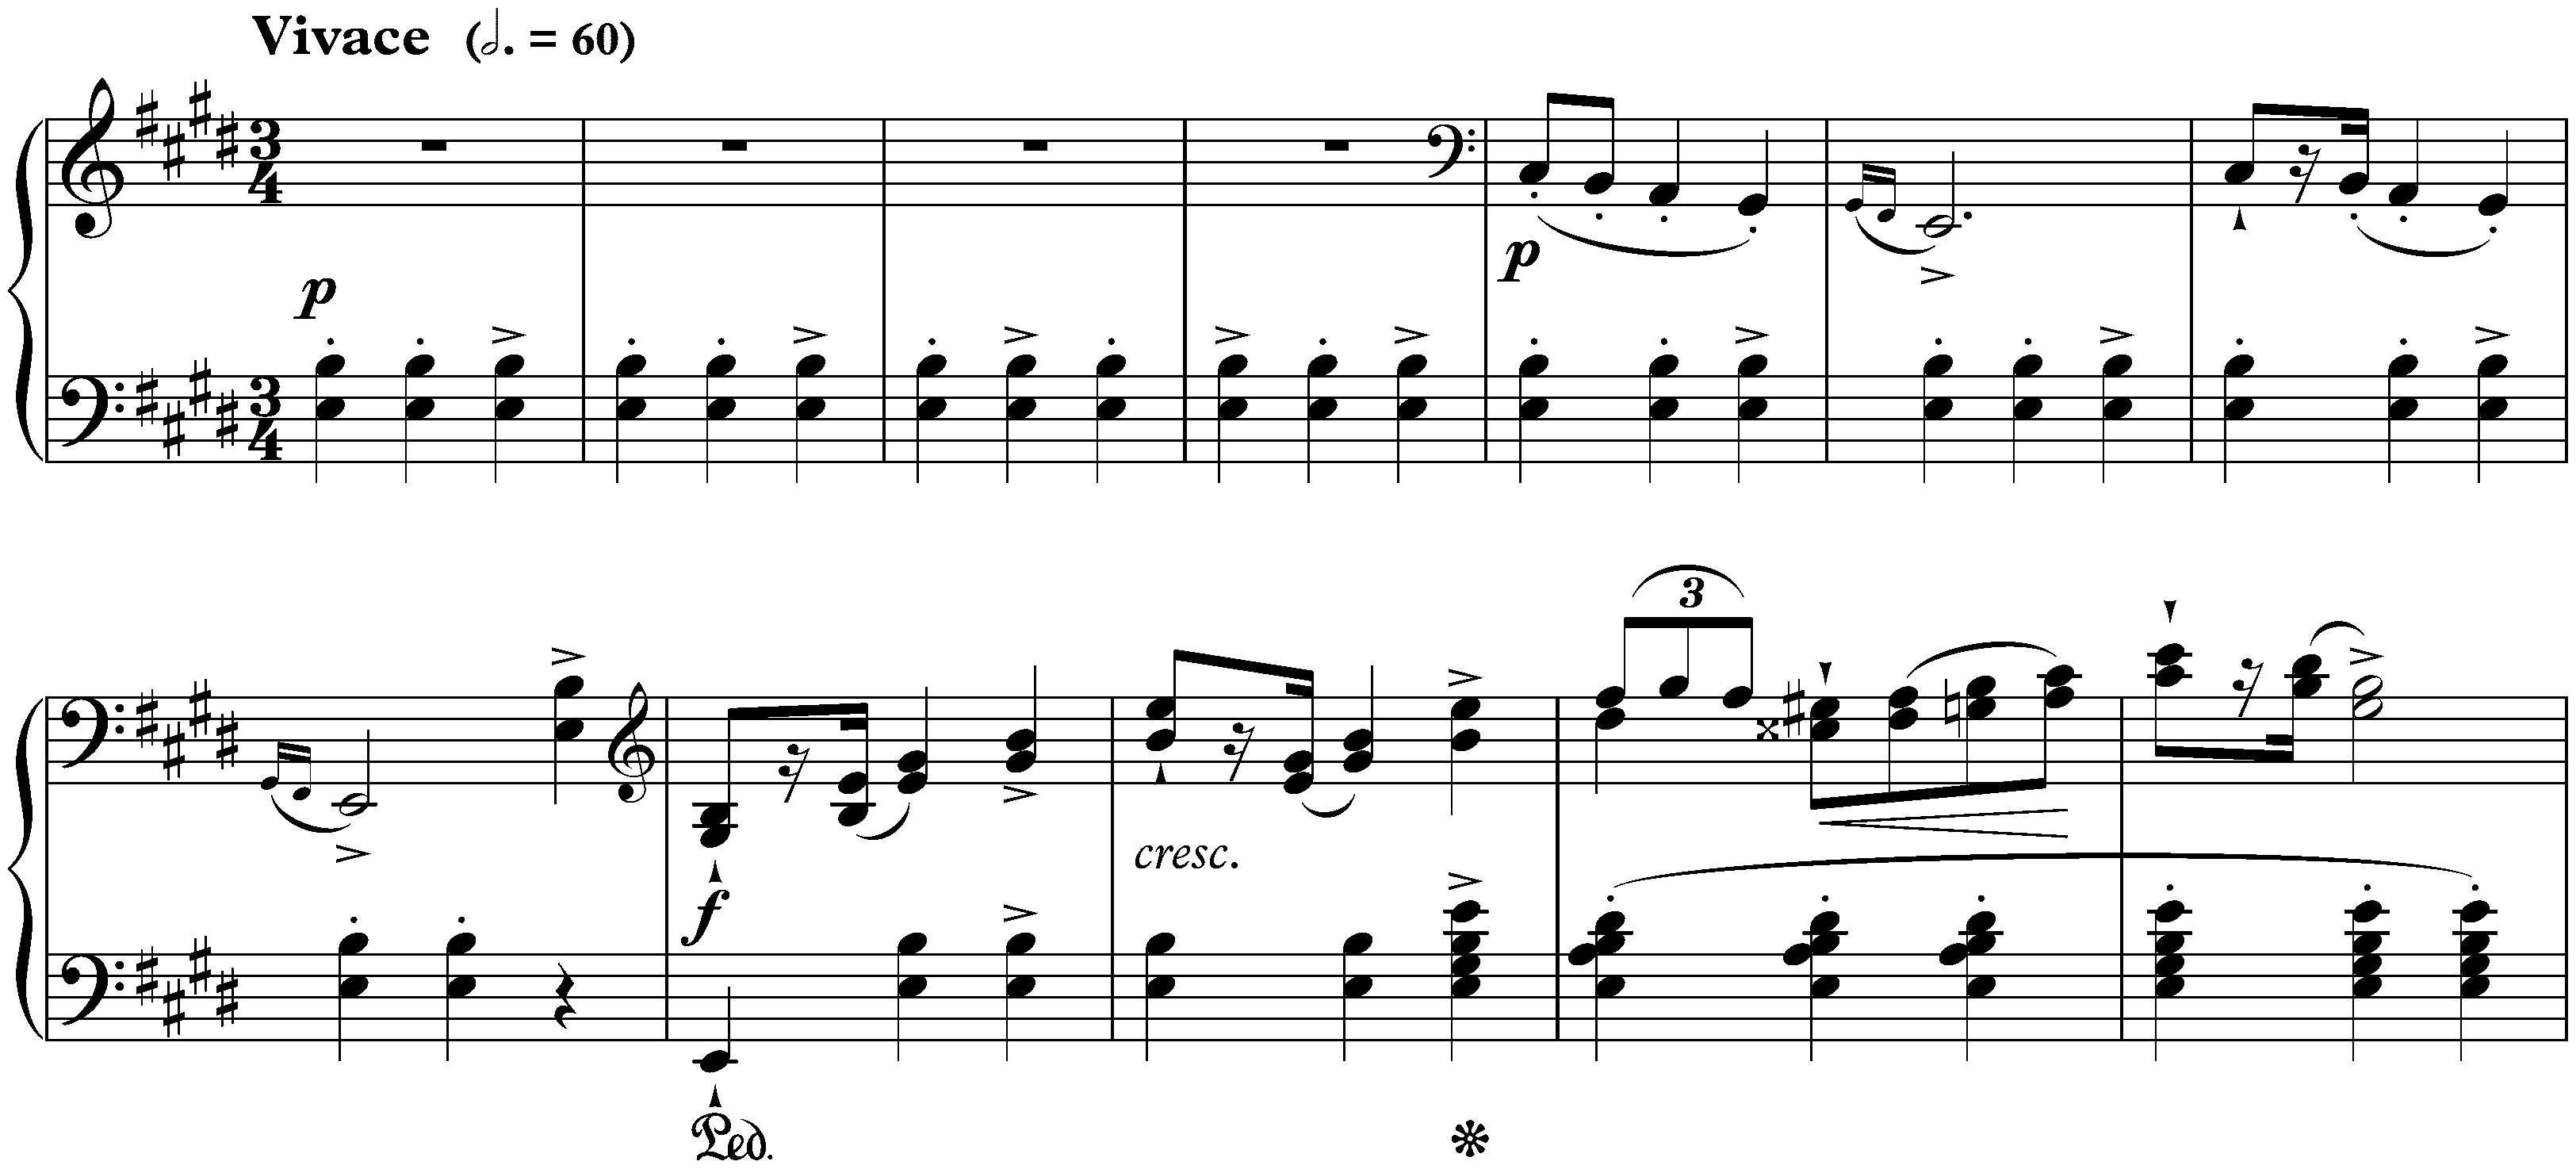 Four Mazurkas, op. 6; 3. E major